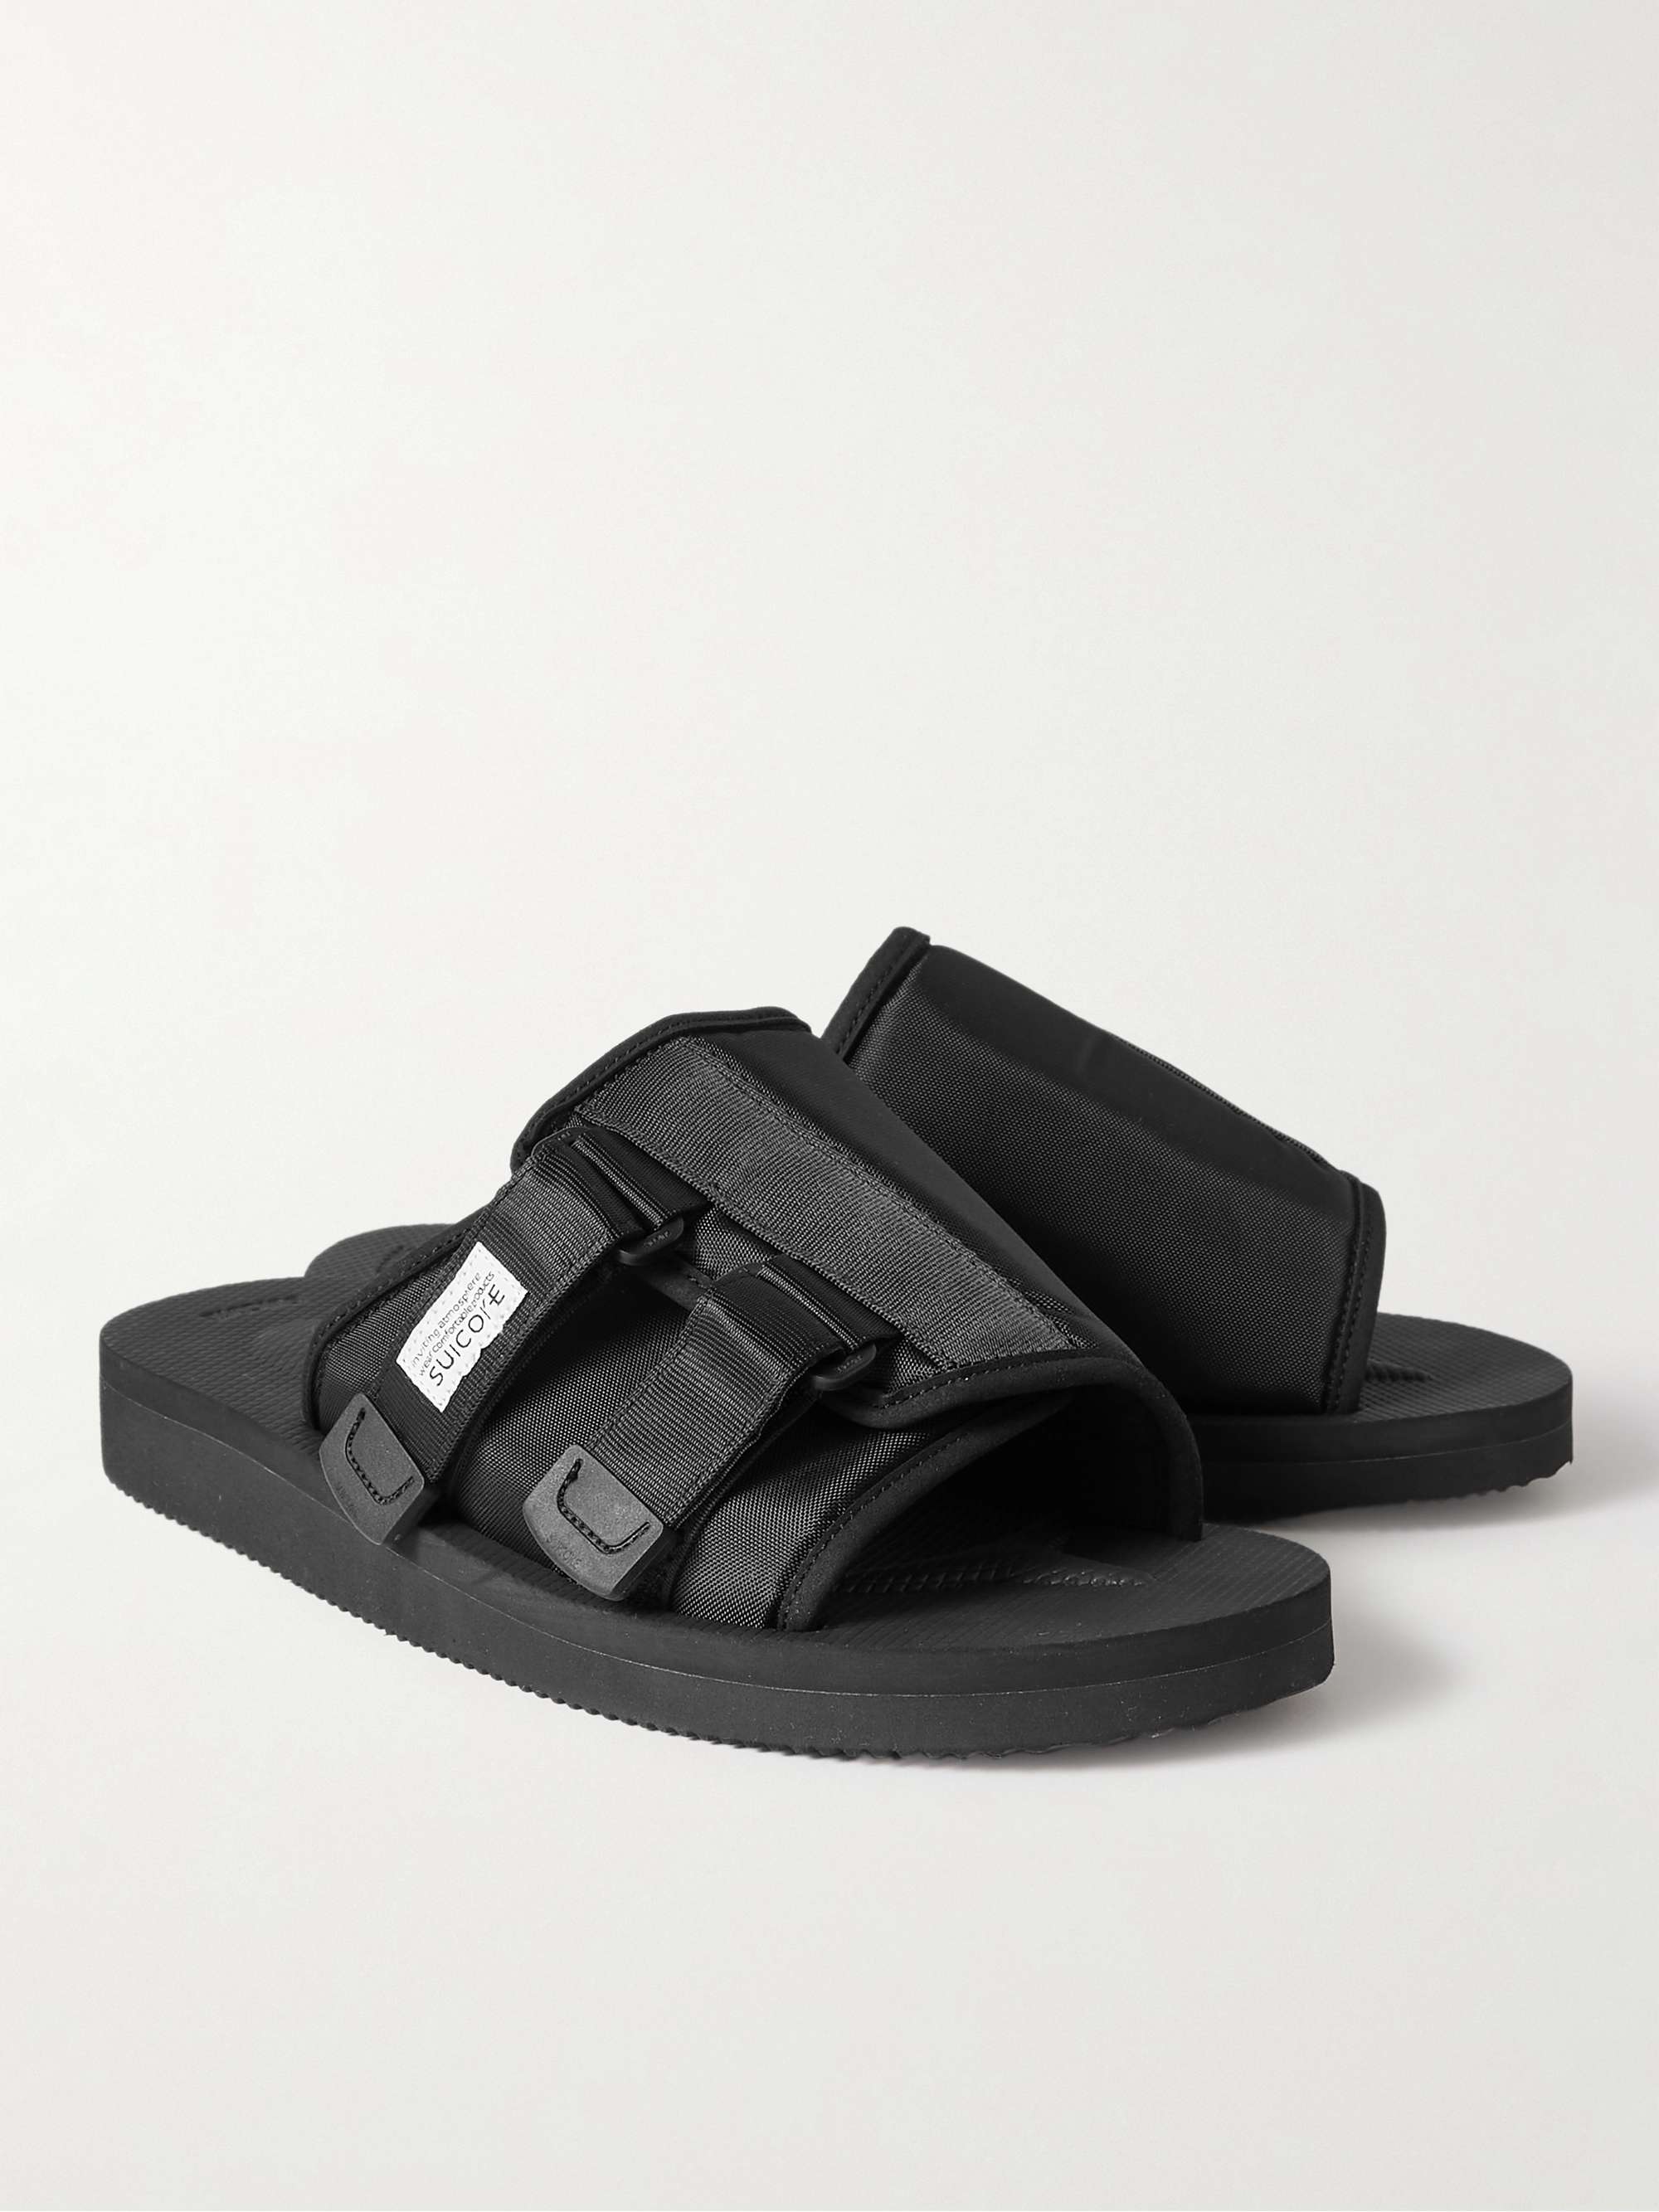 SUICOKE KAW-CAB Webbing-Trimmed Shell Sandals for Men | MR PORTER